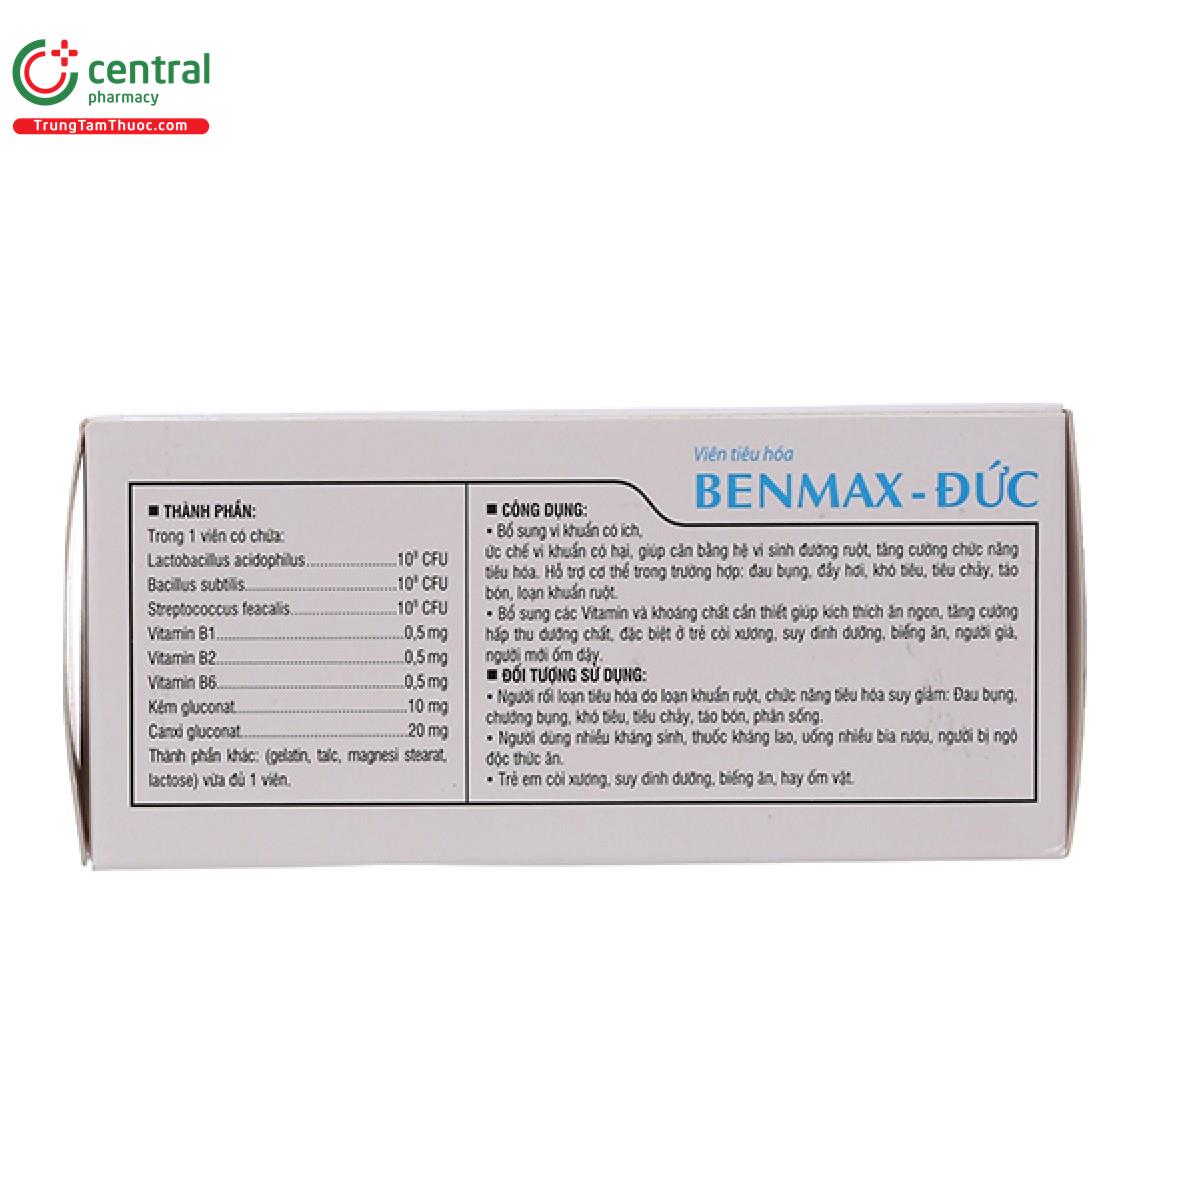 benmax duc 6 J3464